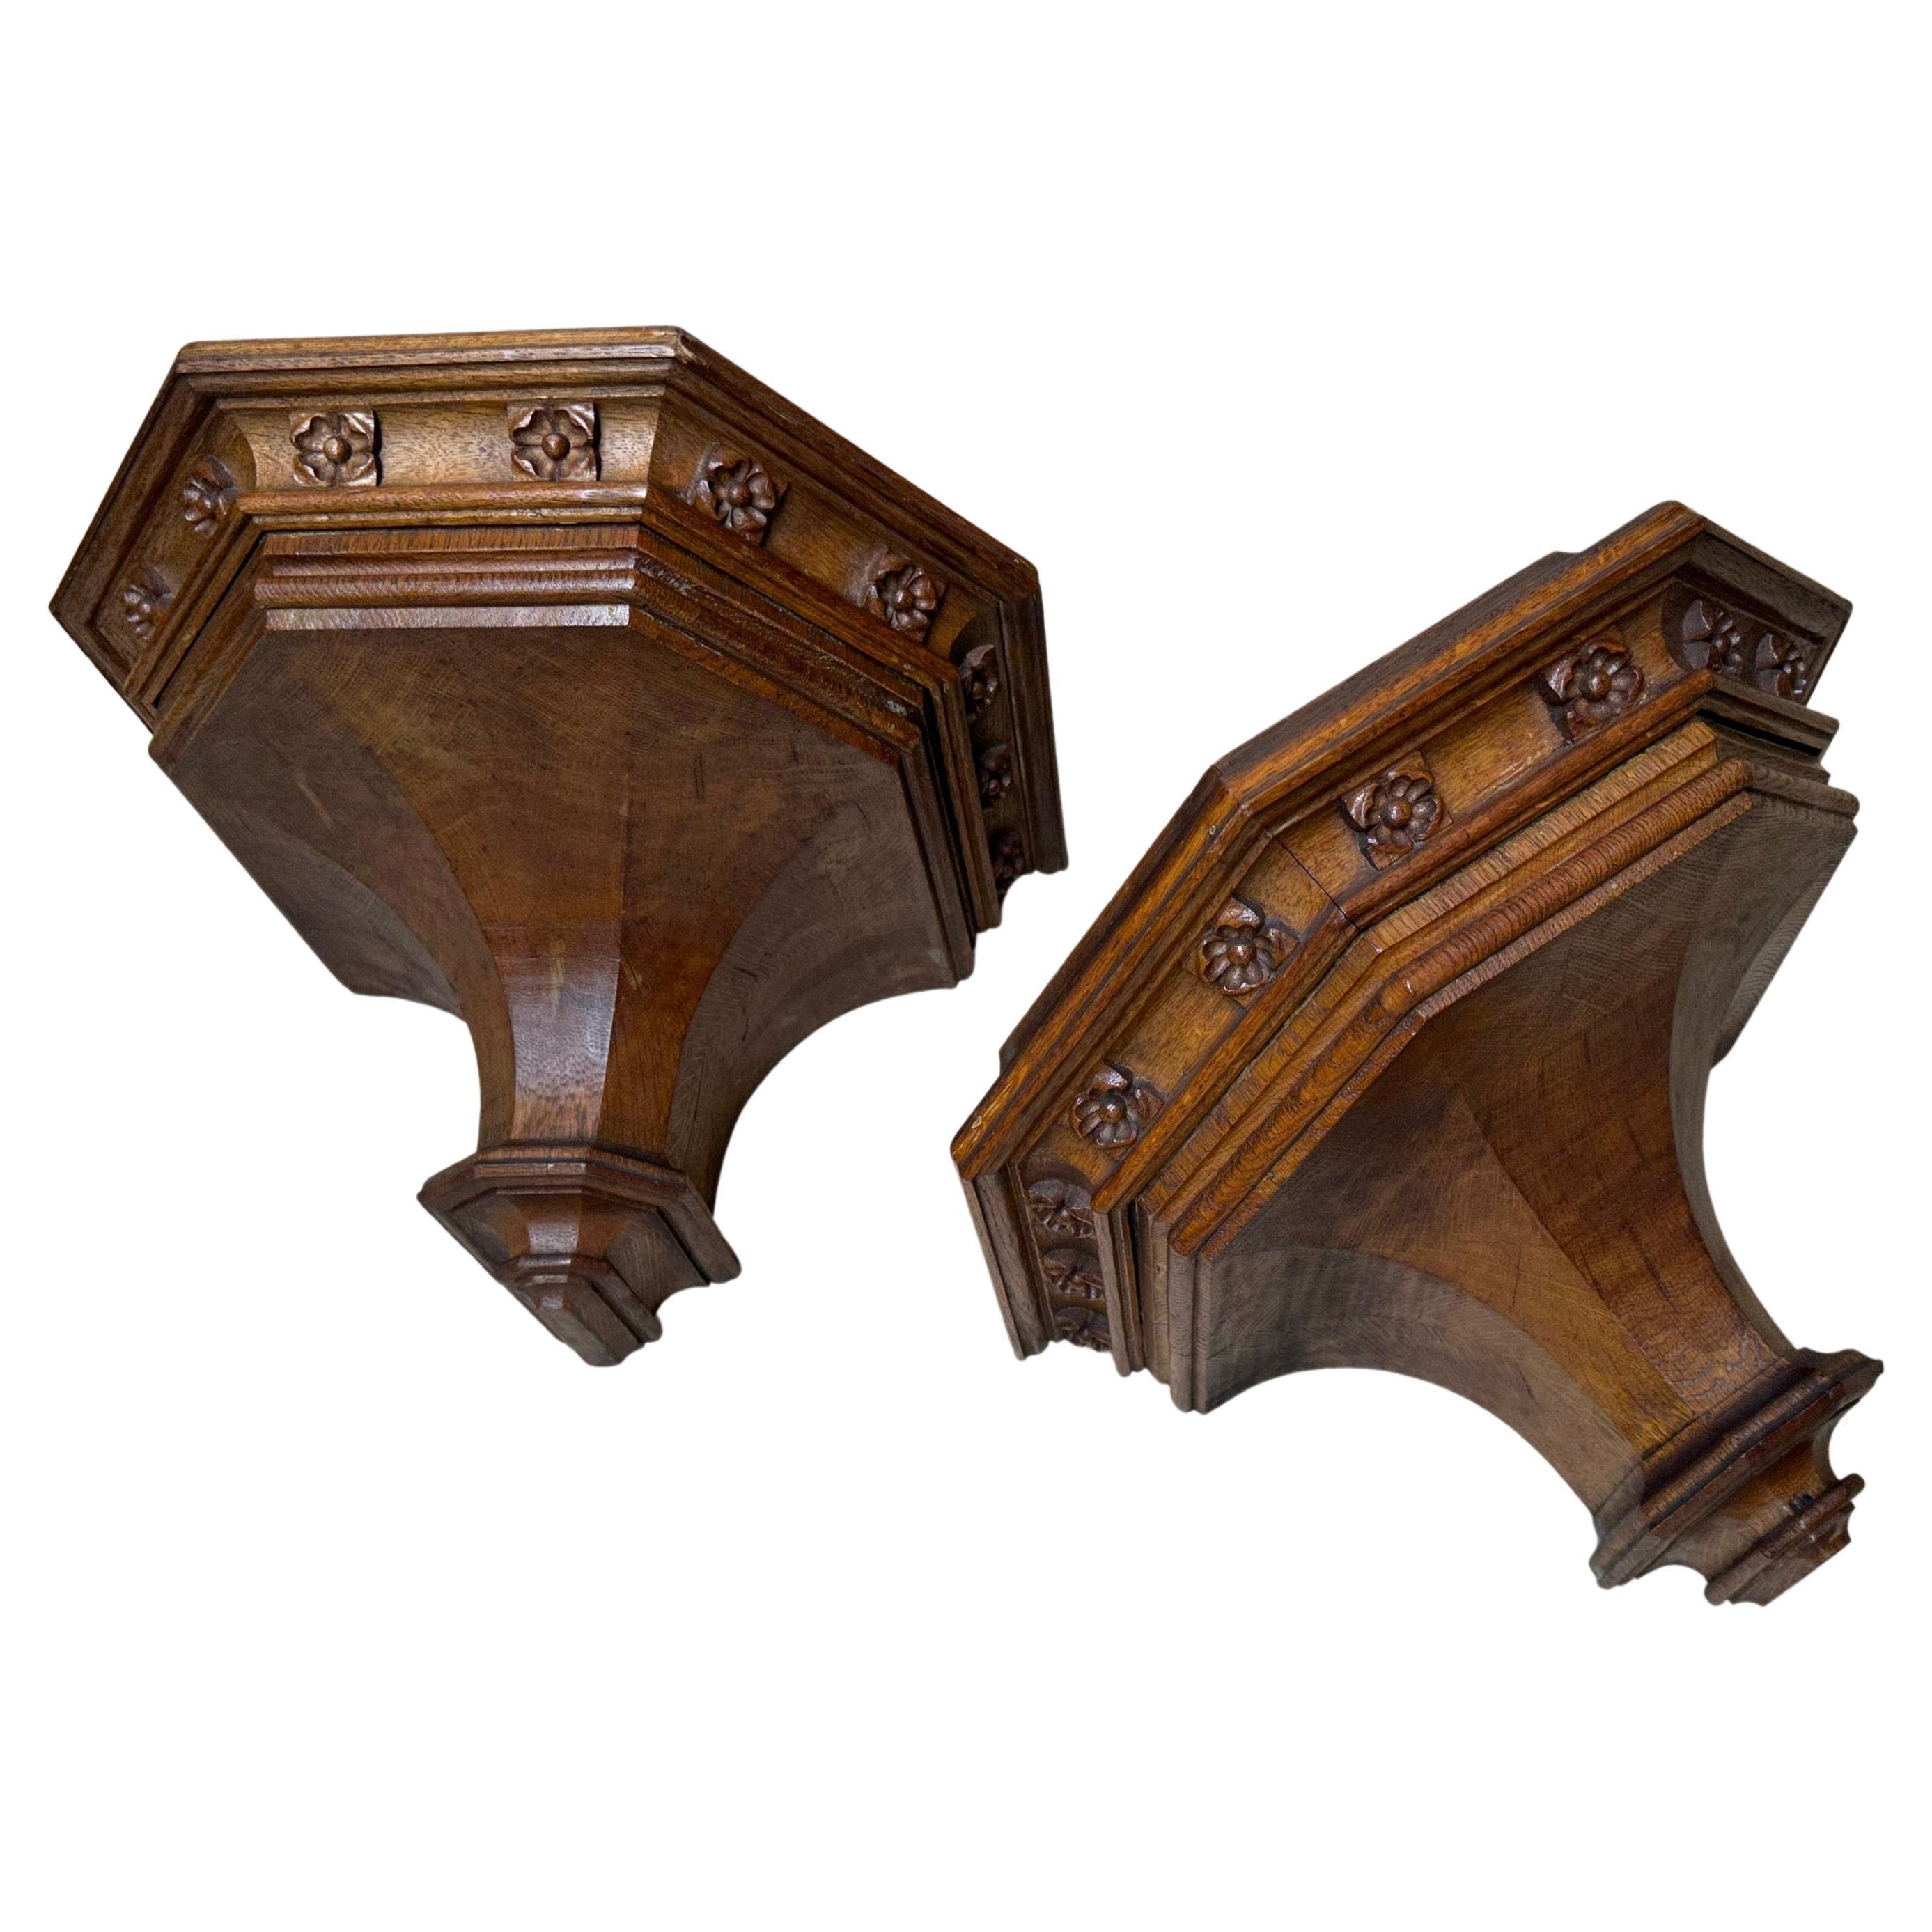 Ancienne paire de supports muraux néo-gothiques sculptés à la main, étagères avec sculptures de qualité